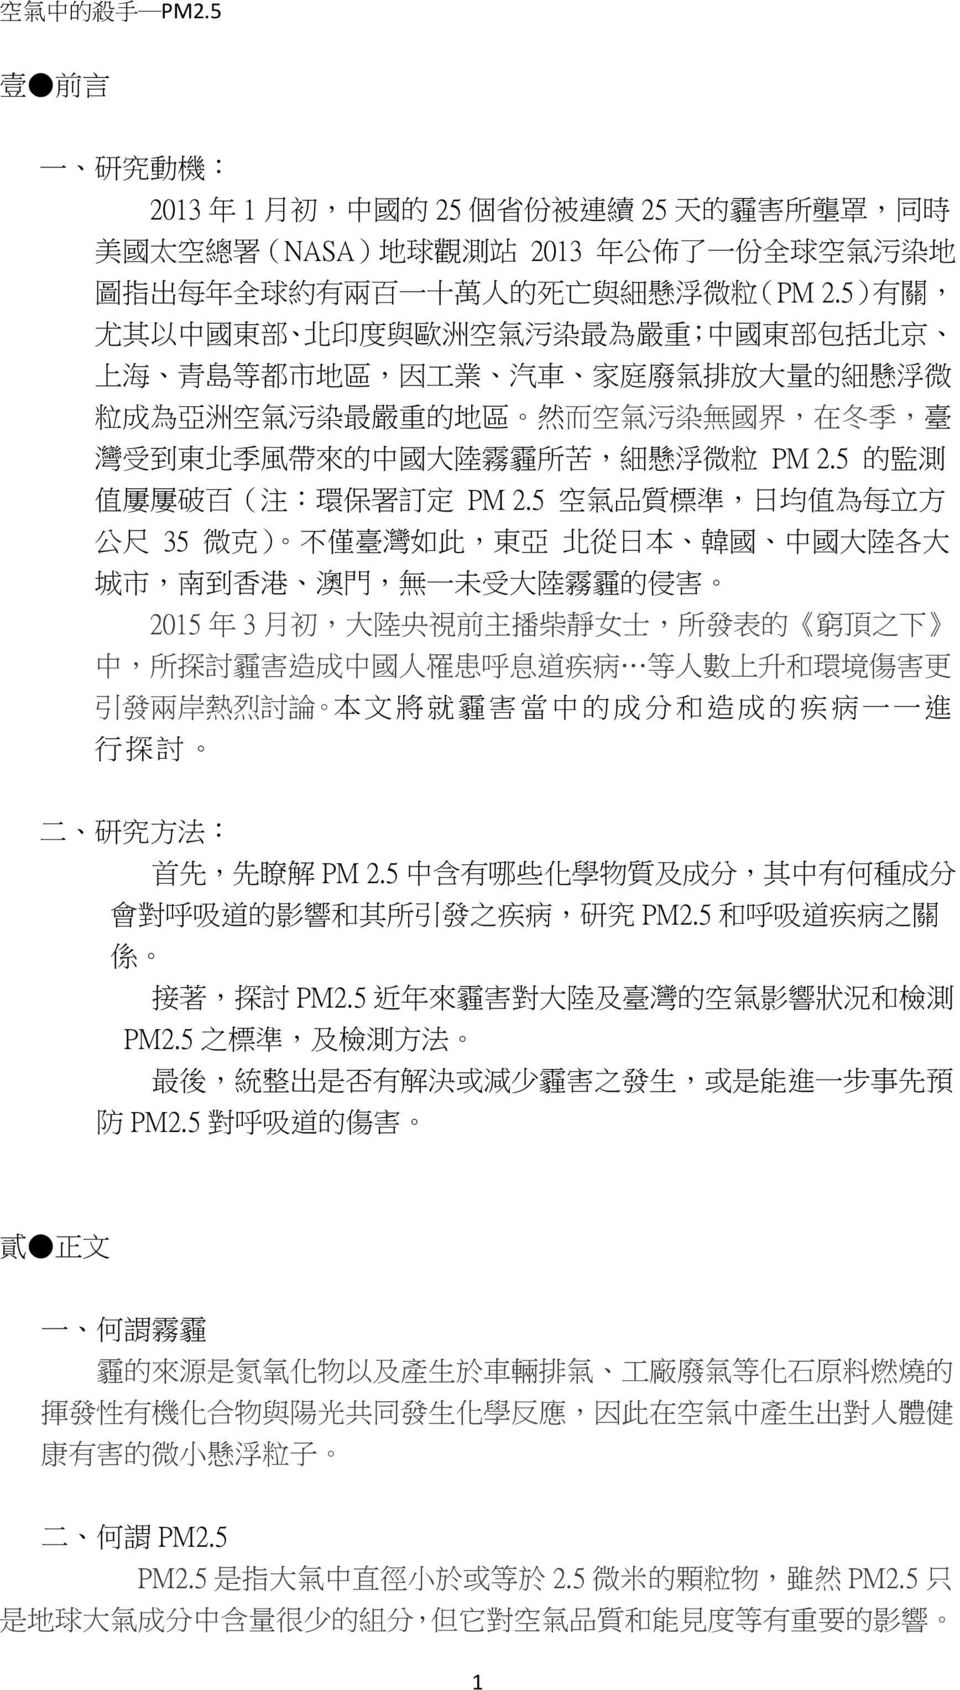 的 中 國 大 陸 霧 霾 所 苦, 細 懸 浮 微 粒 PM 2.5 的 監 測 值 屢 屢 破 百 ( 注 : 環 保 署 訂 定 PM 2.